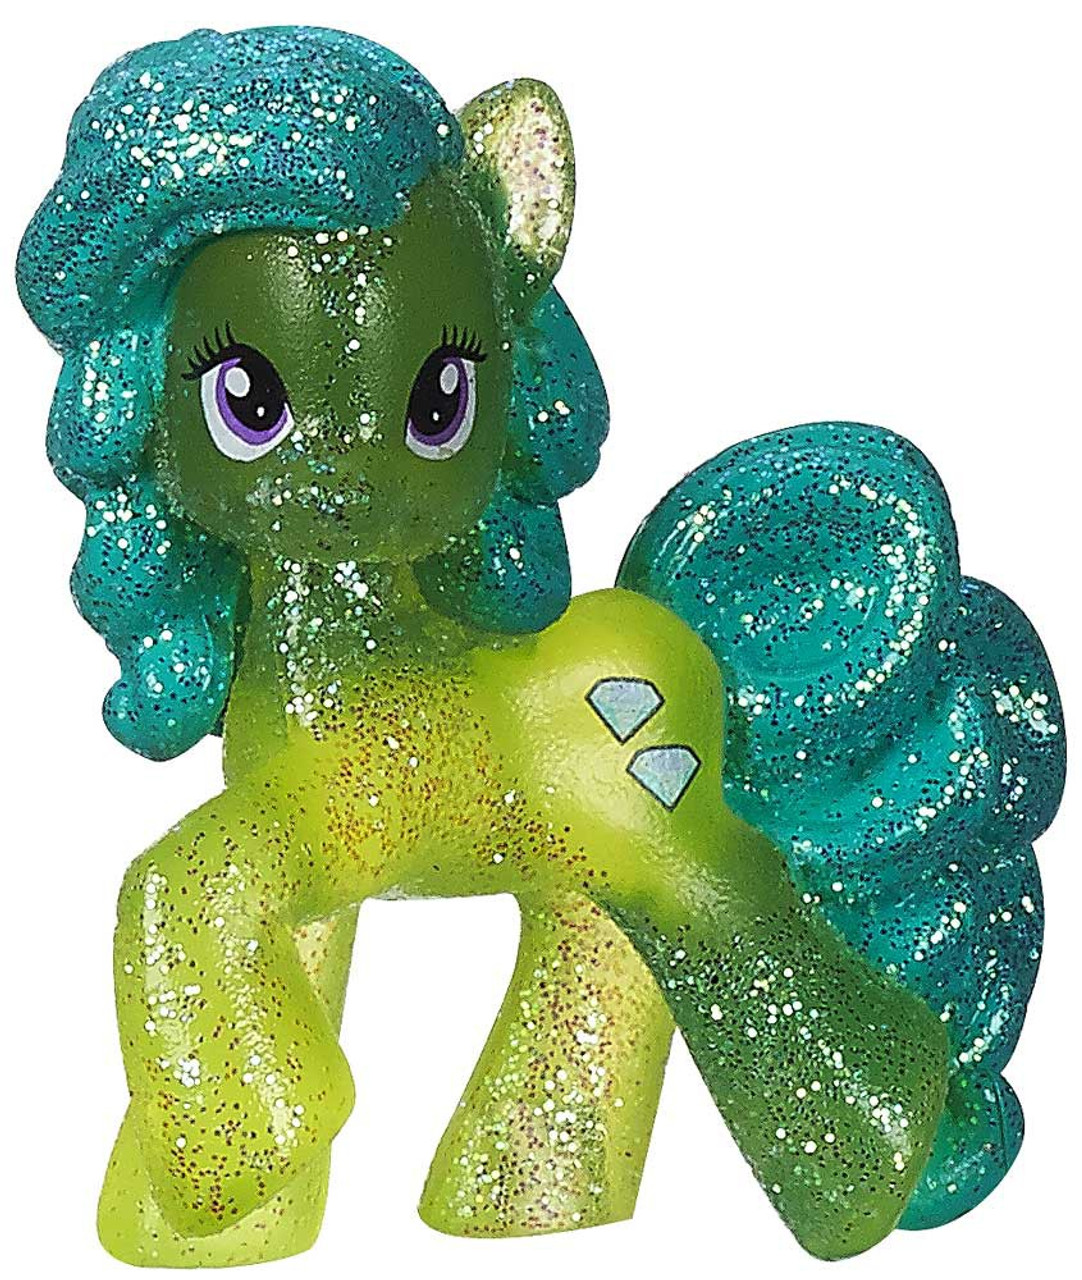 Светящихся пони. Грин Джевел пони. Green Jewel пони. Блестящие игрушки my little Pony. Светящаяся пони игрушка.